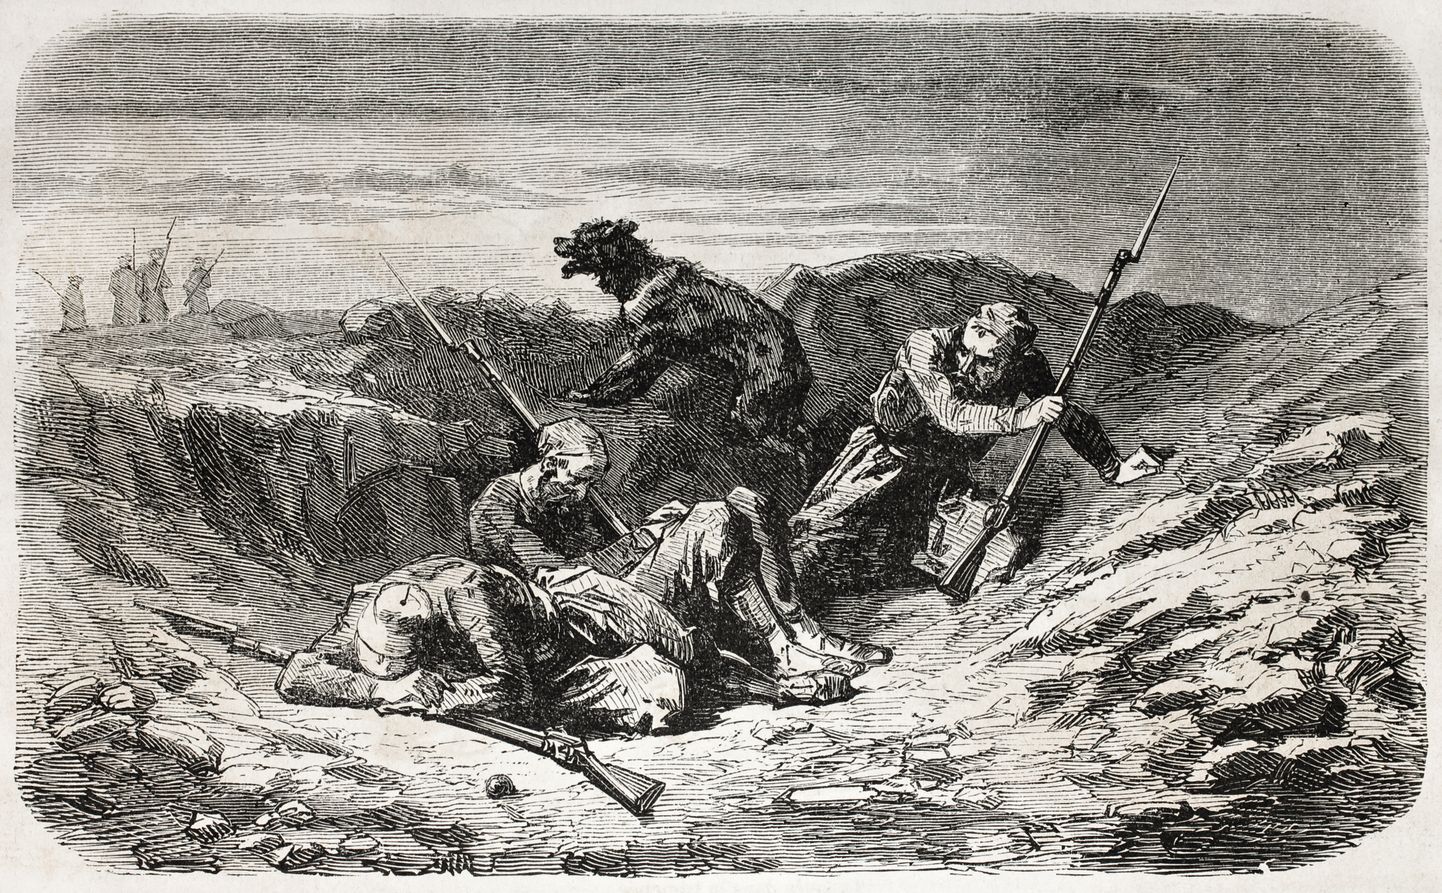 Illustratsioon sõduritest ja koerast kaevikus. Avaldatud Prantsuse ajakirjas "L'Illustration Journal Universel" 1857. aastal.